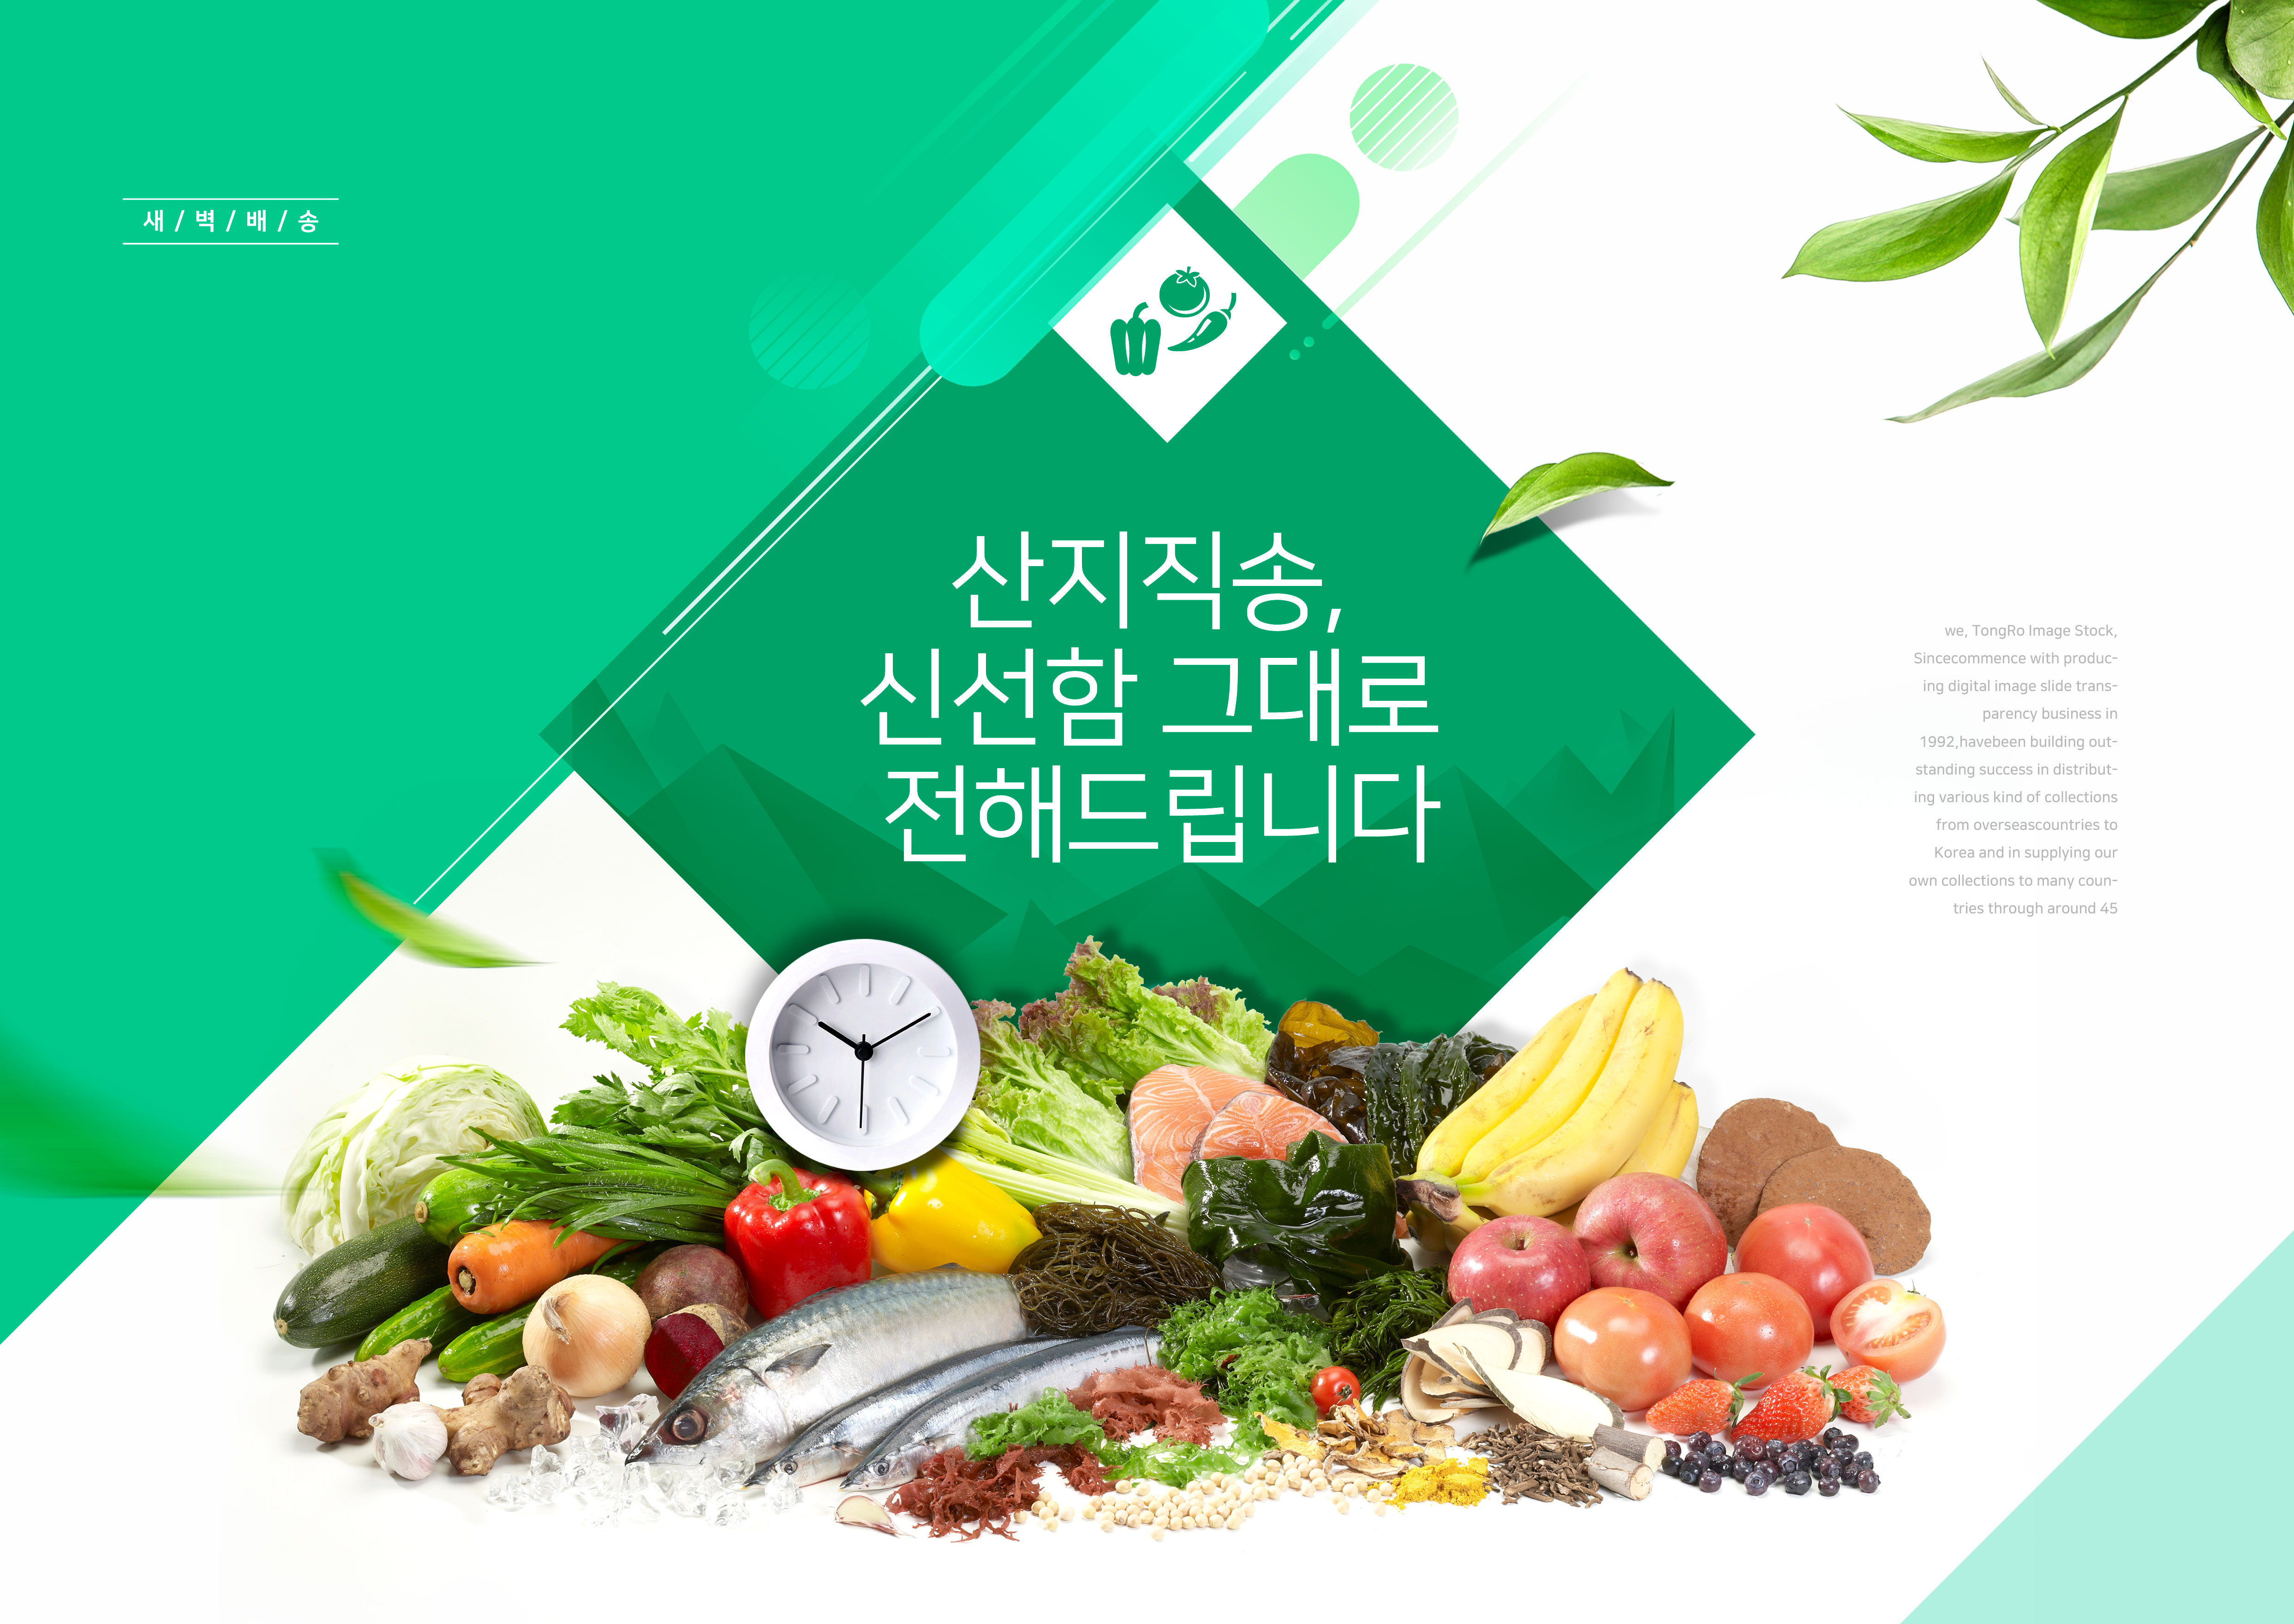 绿色有机食品海报设计素材套装[PSD]插图(4)